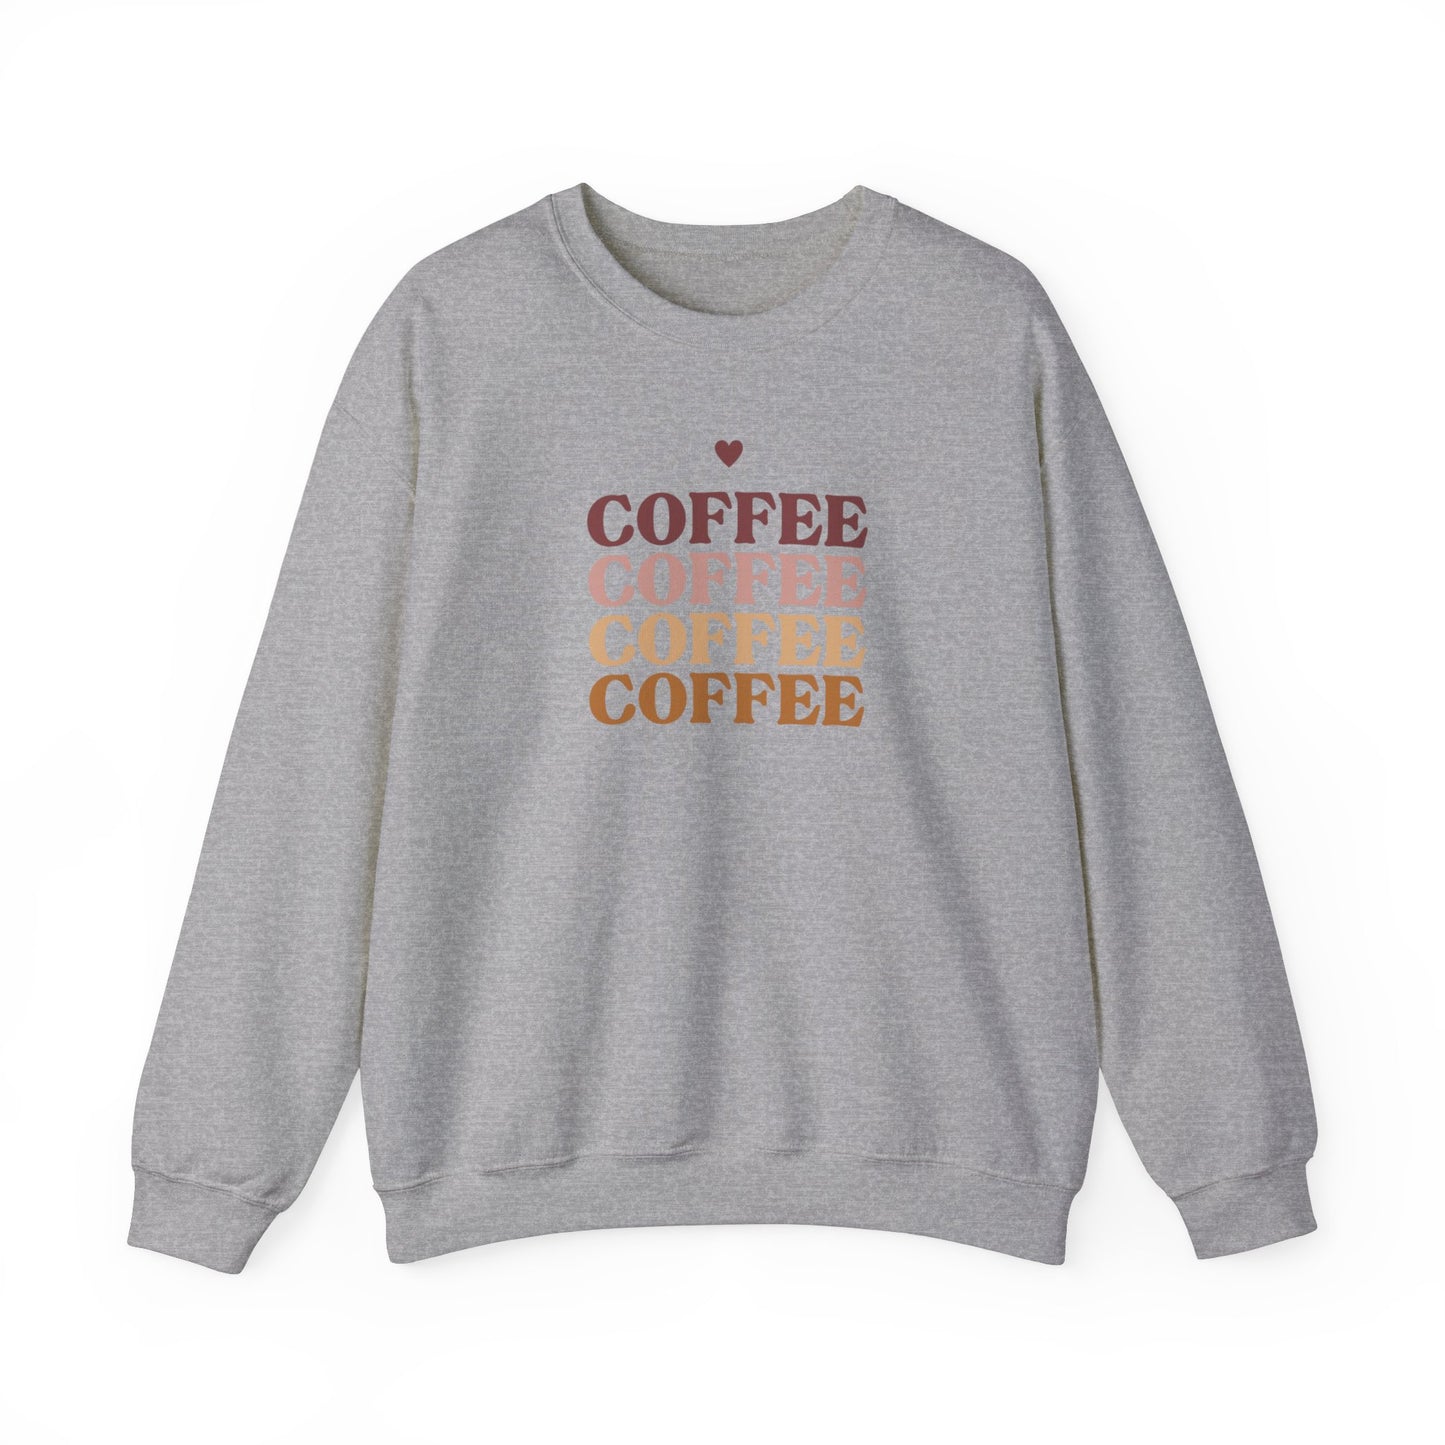 Coffee Coffee Coffee Coffee  Sweatshirt, Gift For her Gift for Coffee Lovers, Gift for Mom, Gift For Aunt